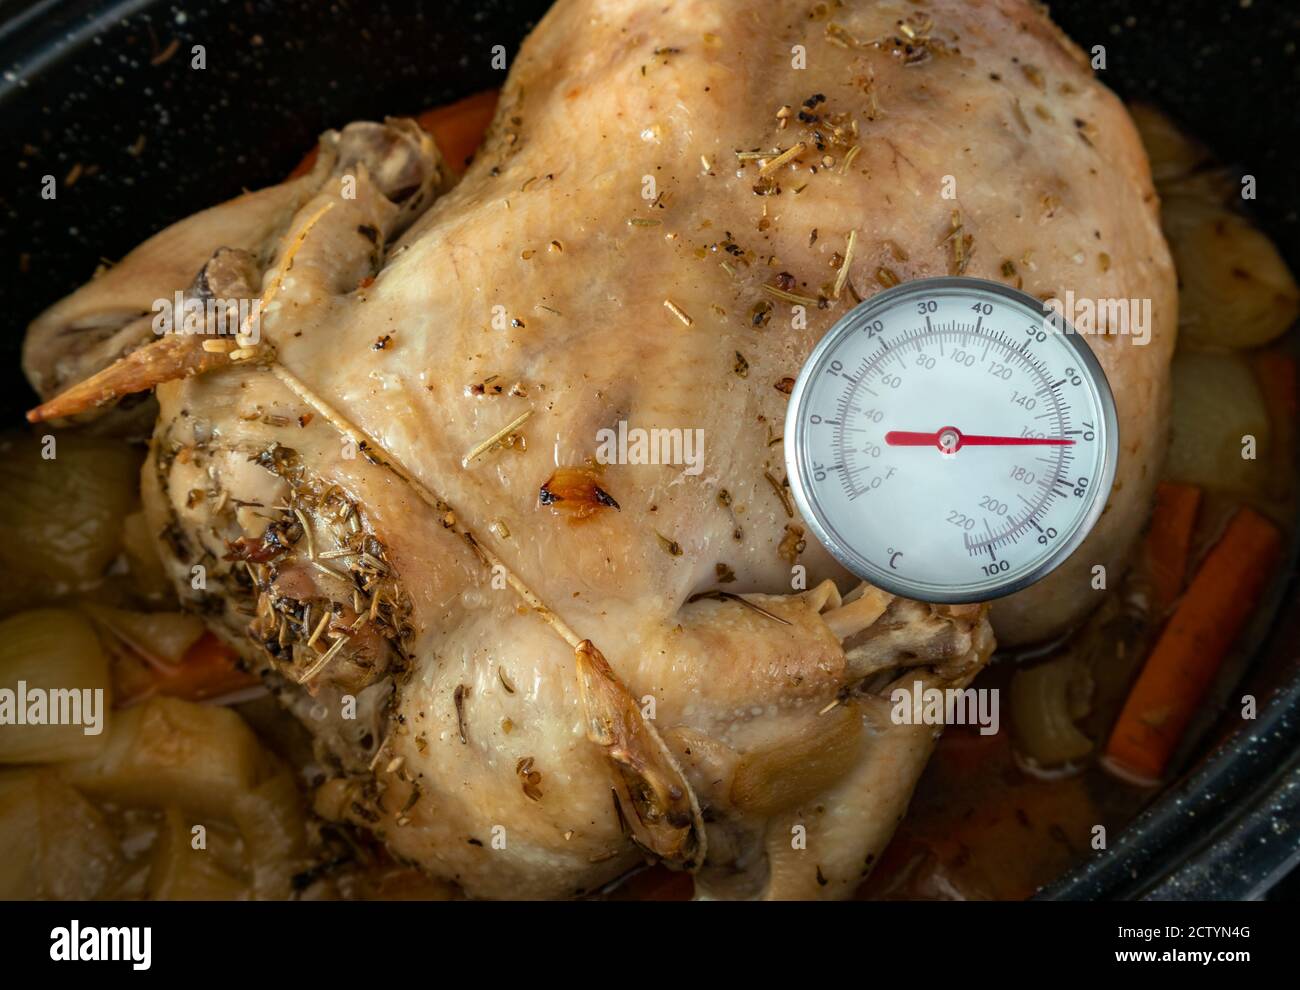 Misurazione della temperatura interna del pollo cotto in forno. Termometro a lettura immediata/carne per misurare la temperatura sicura per gli alimenti. Pollo intero in padella nera. Foto Stock